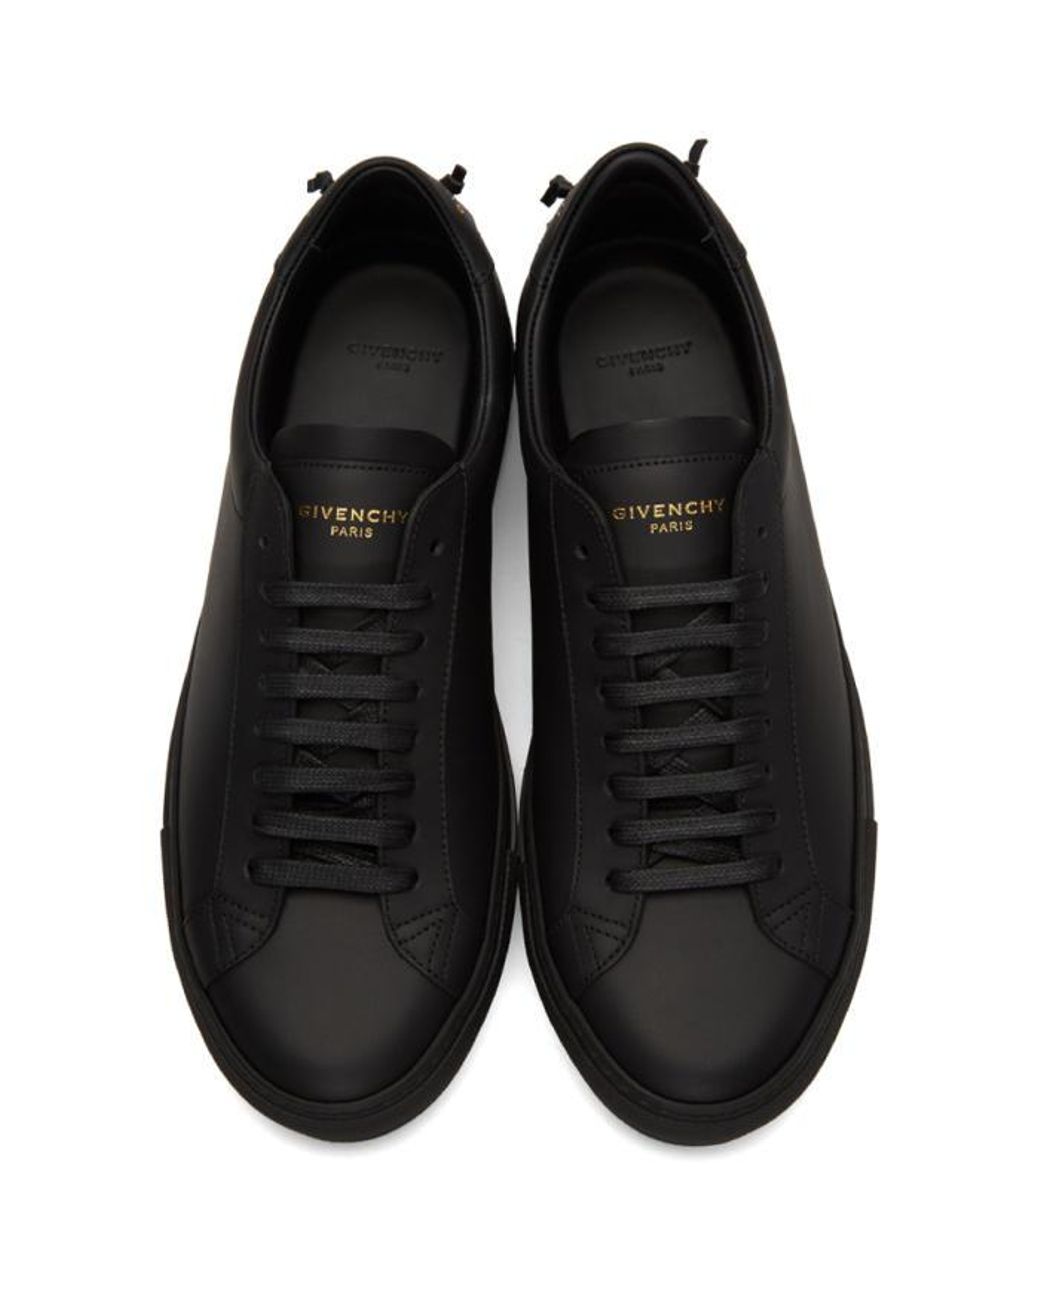 renæssance ankomst hovedpine Givenchy Black Knot Sneakers for Men | Lyst